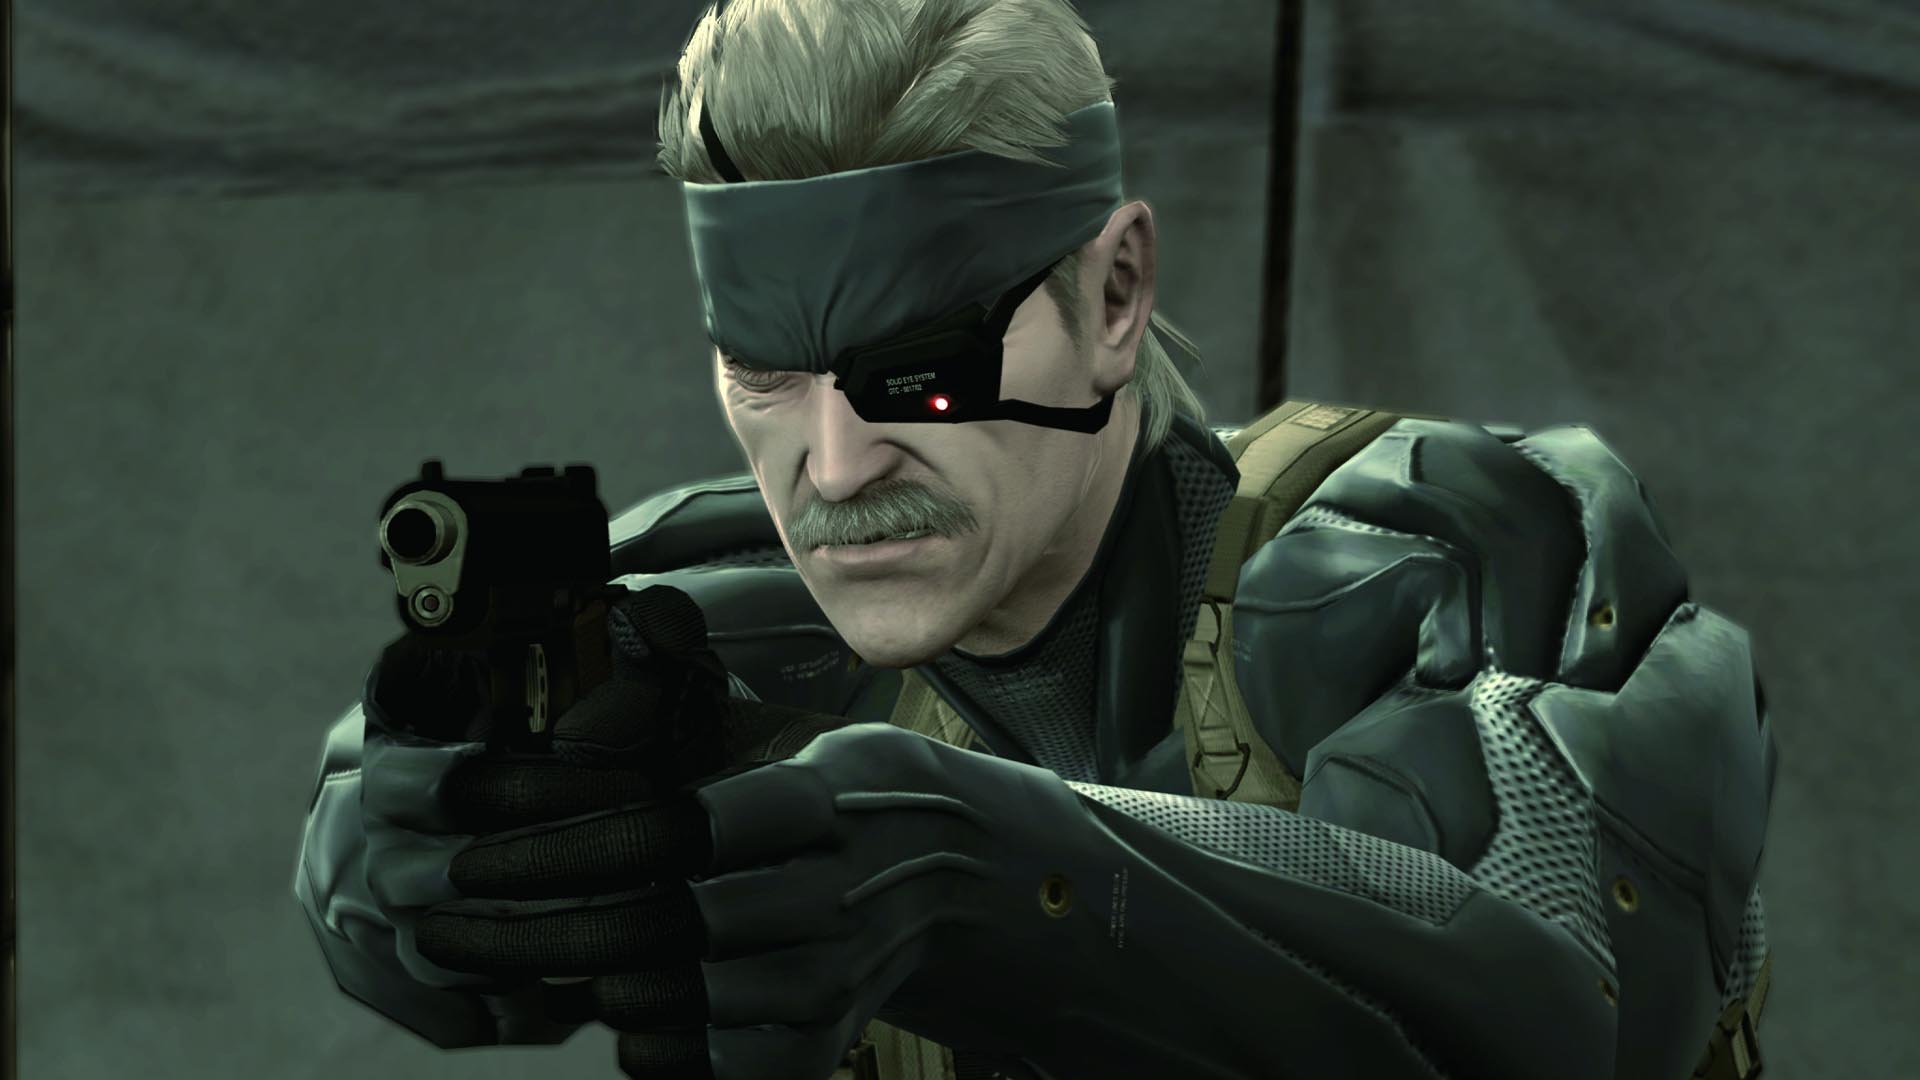 Metal Gear Rising Revengeance Vs Metal Gear Solid V